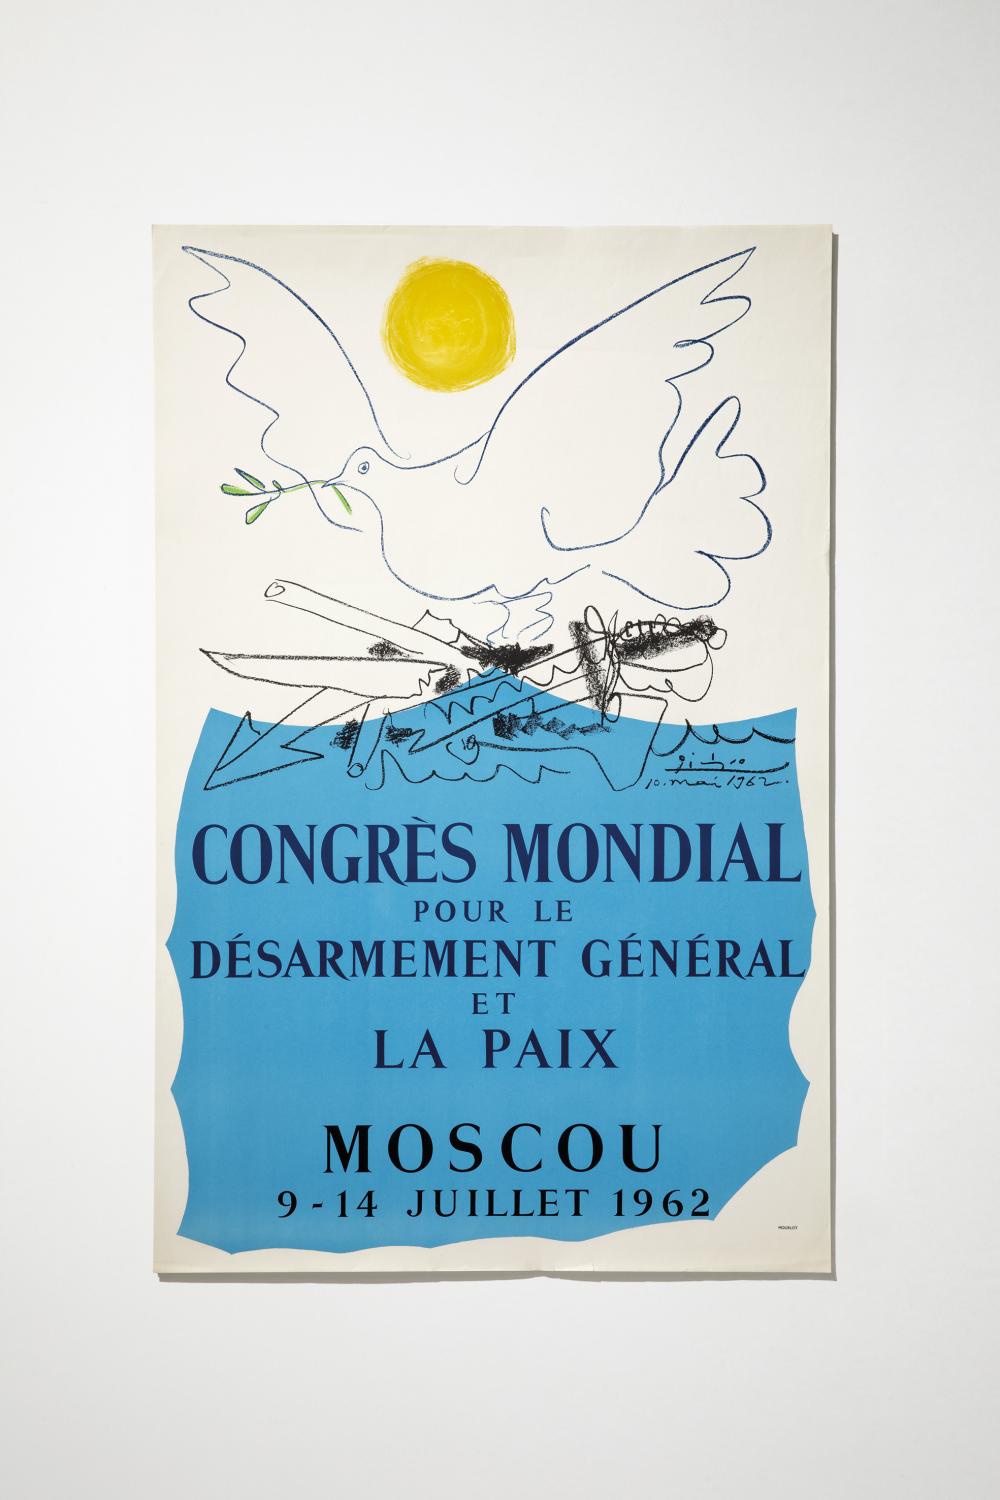 Congrès Mondial pour le Désarmement Général et la Paix, 1962, 100 x 66 cm